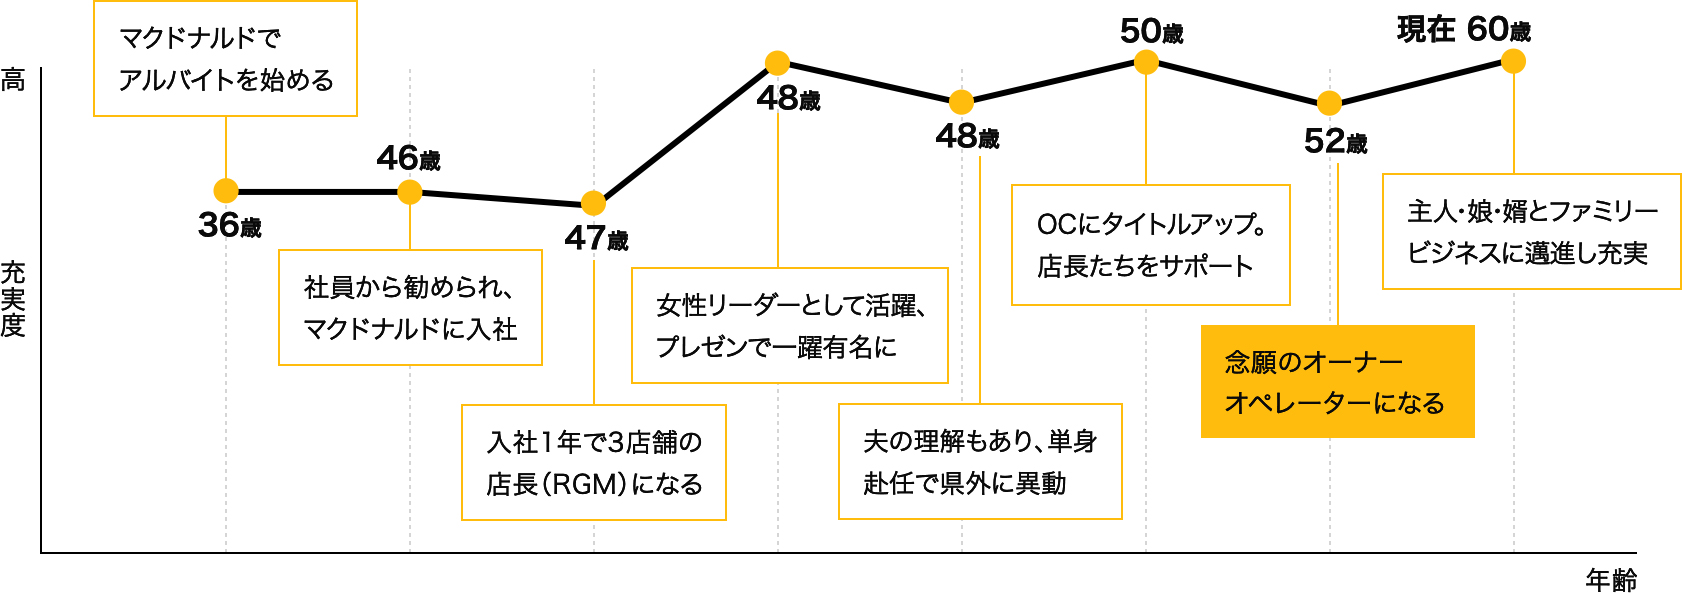 大石 千枝さんのオーナー人生グラフ